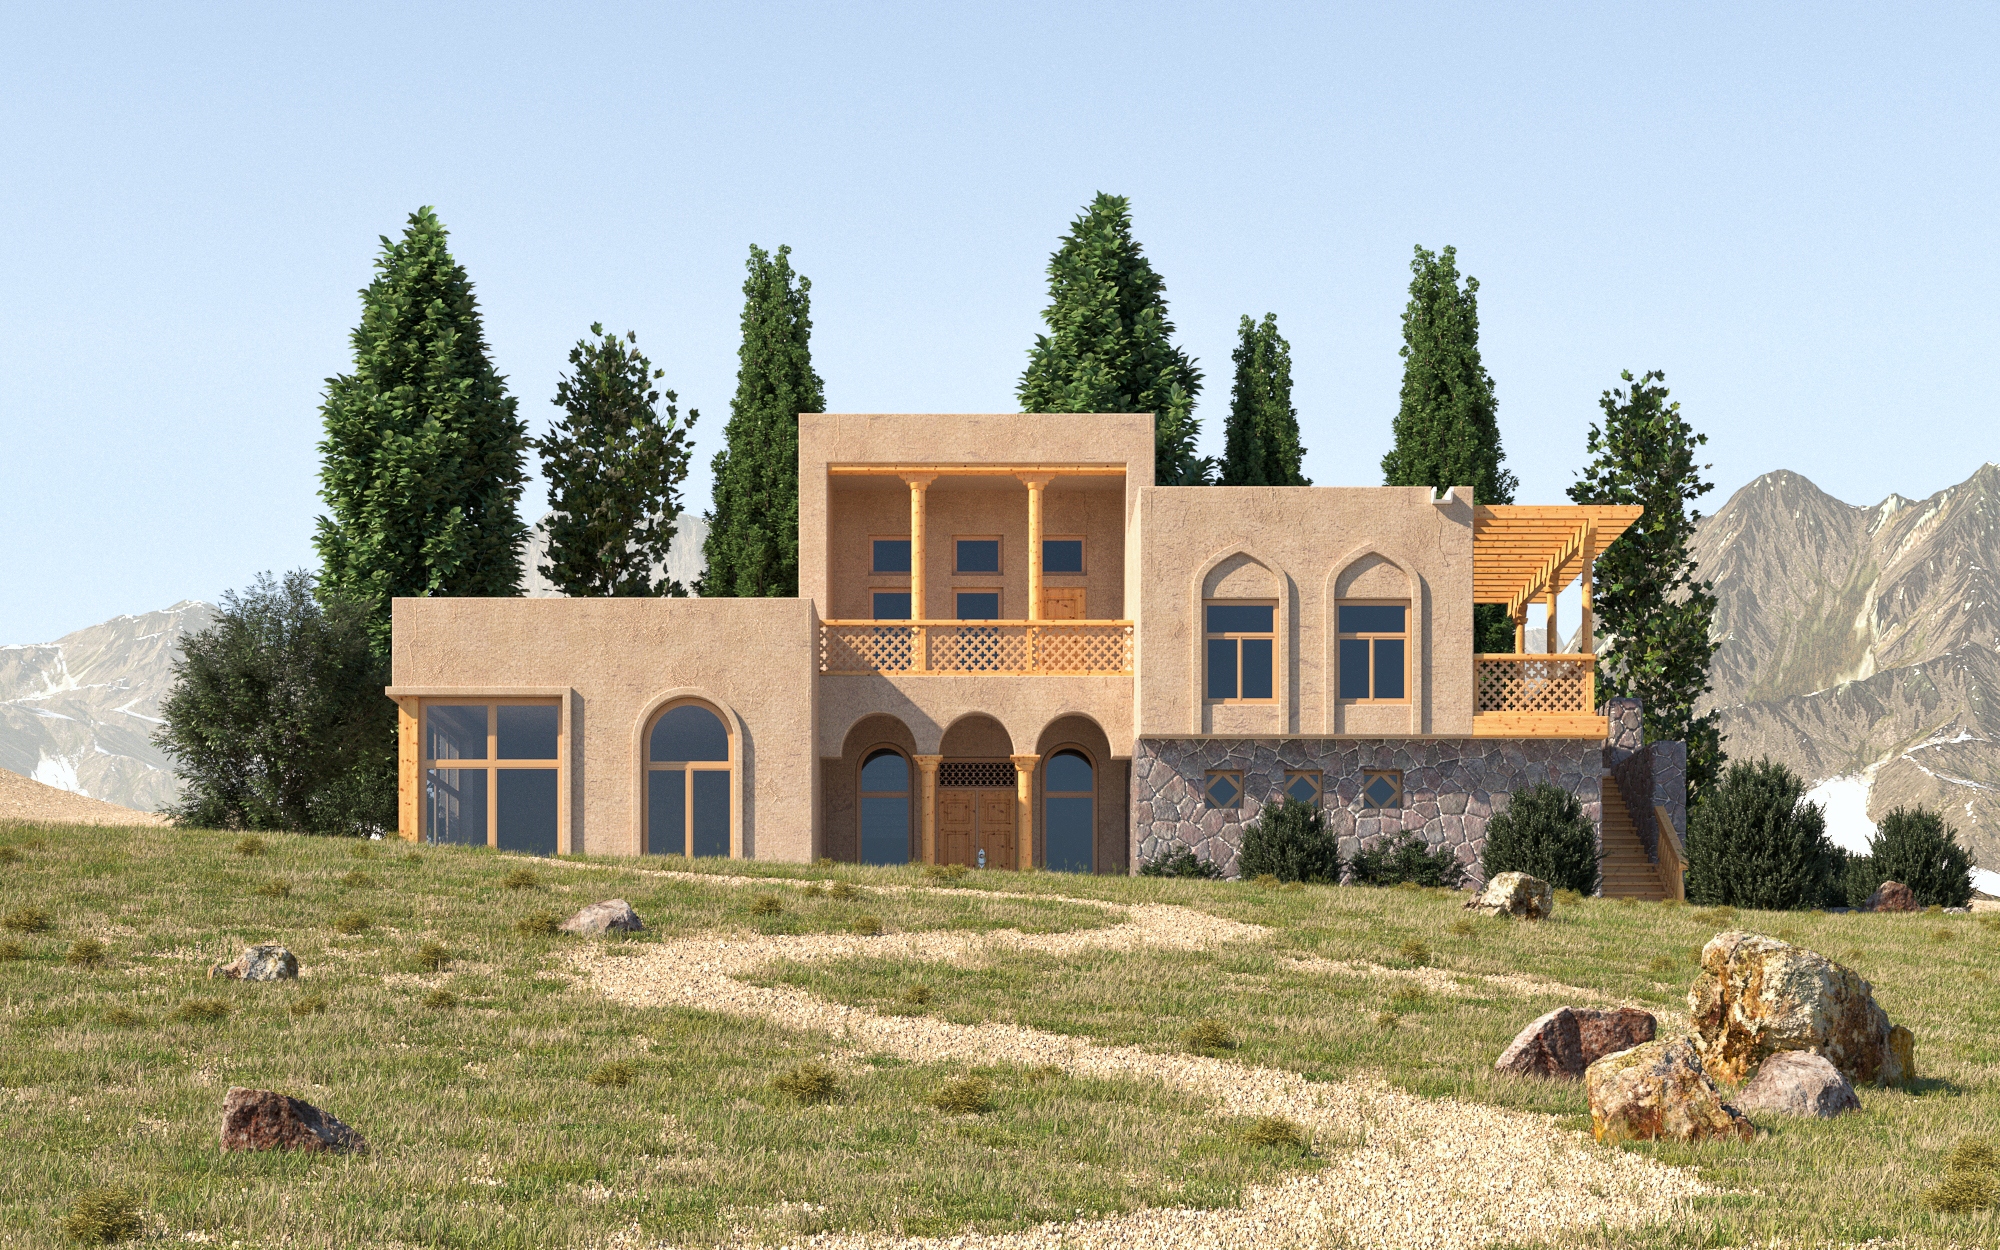 ताजिकिस्तान की पारंपरिक वास्तुकला 3d max corona render में प्रस्तुत छवि